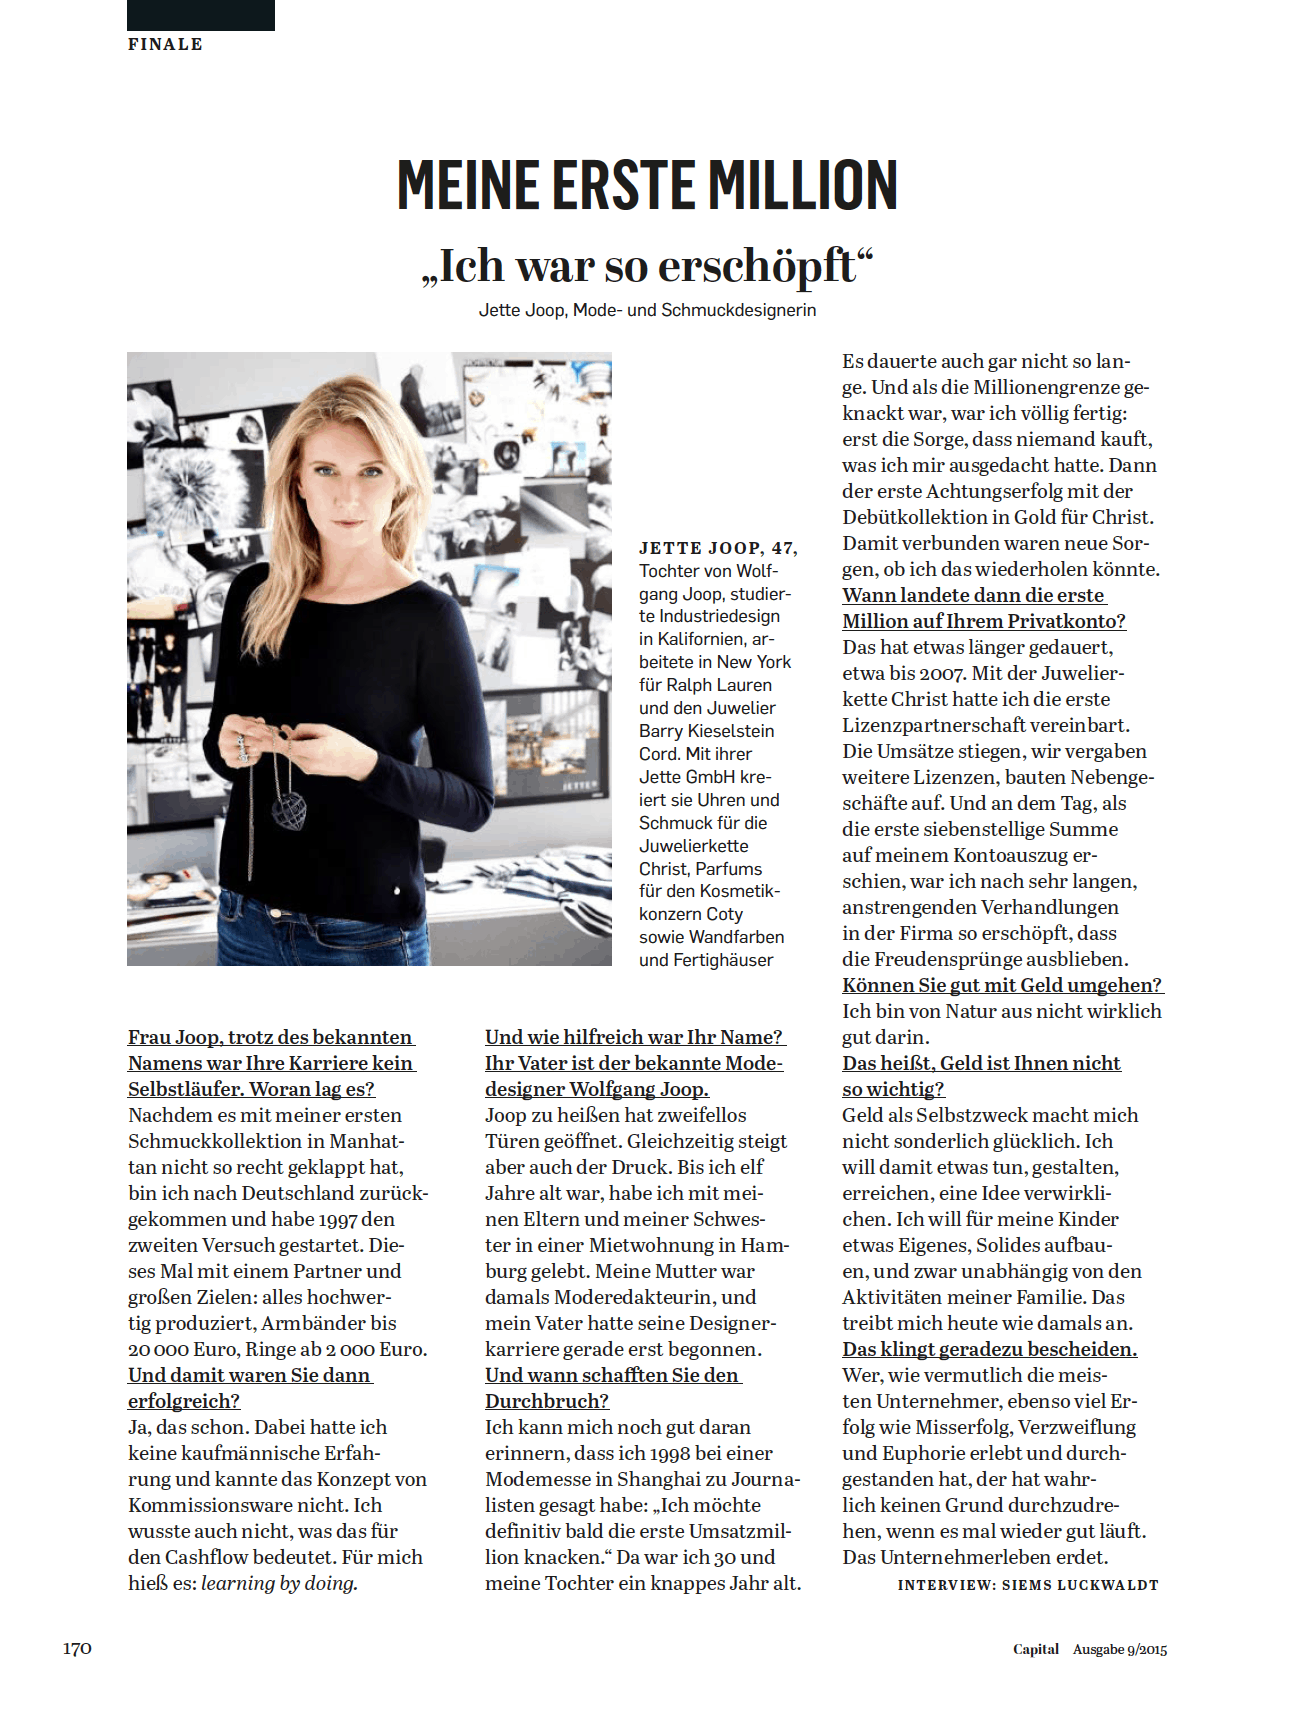 Interview: Jette Joop über ihre erste Million (für Capital)